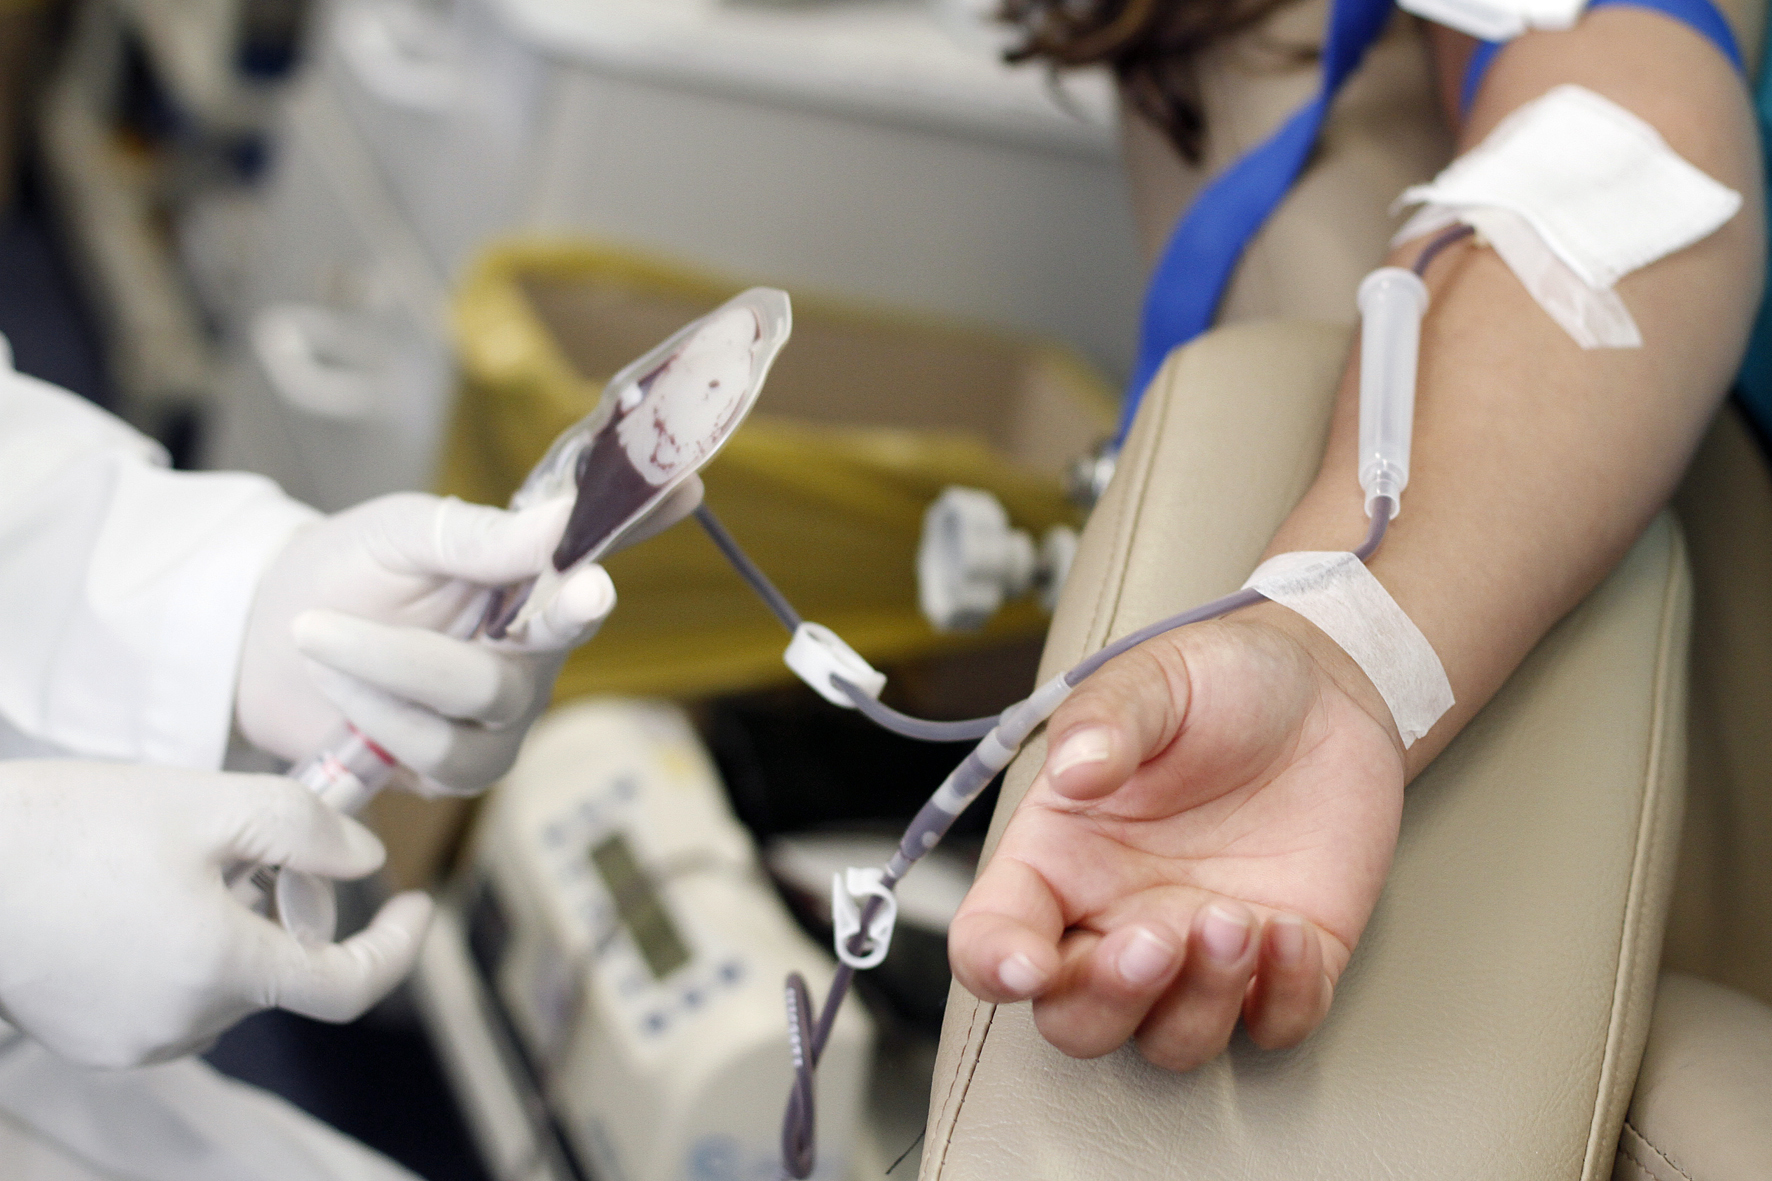 Hemoba convida doadores para suprir estoque de sangue